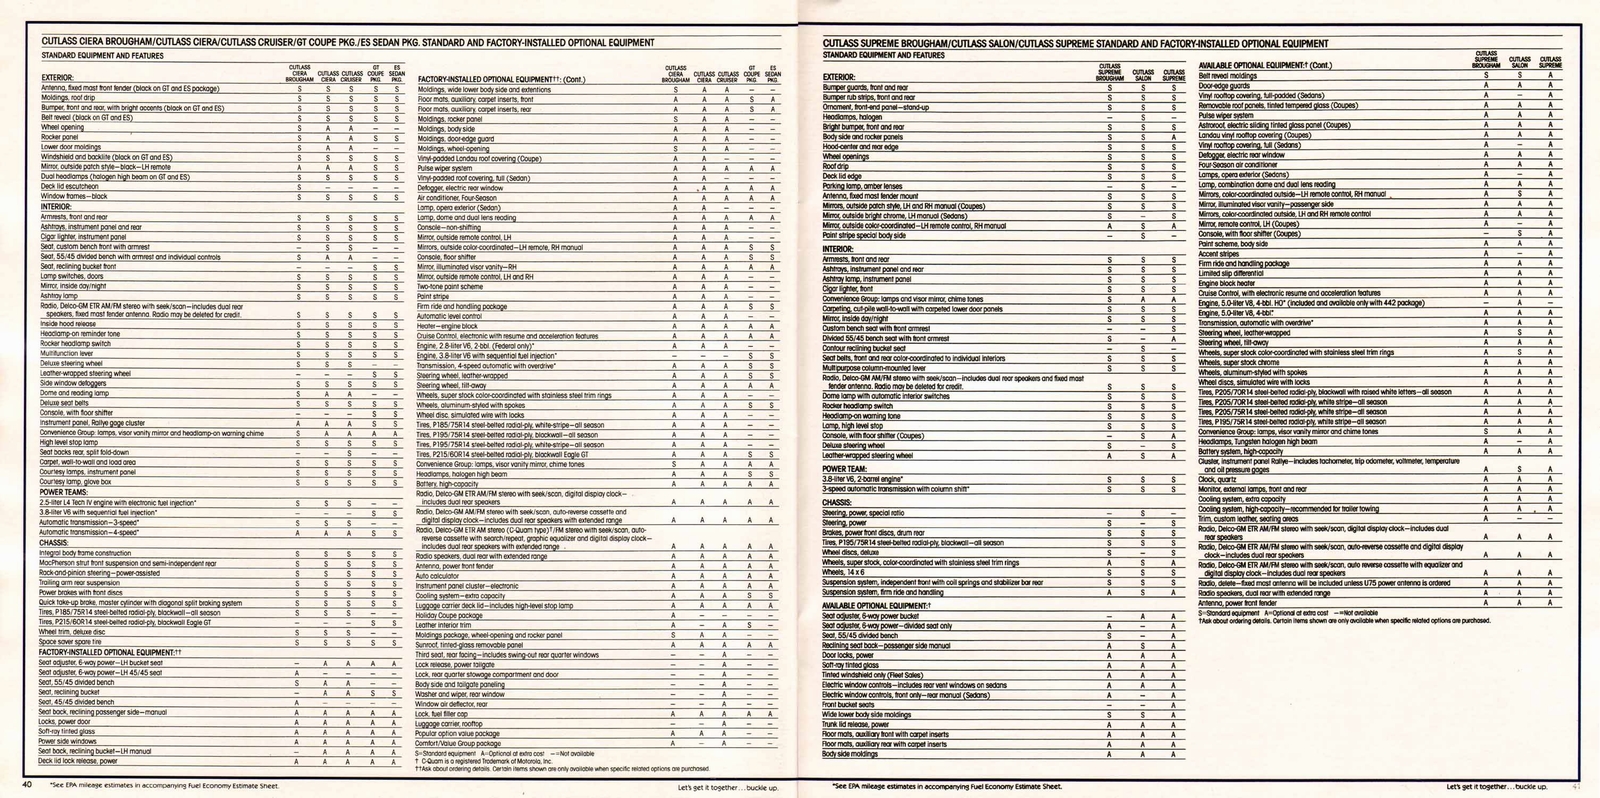 n_1986 Oldsmobile Mid Size (1)-40-41.jpg